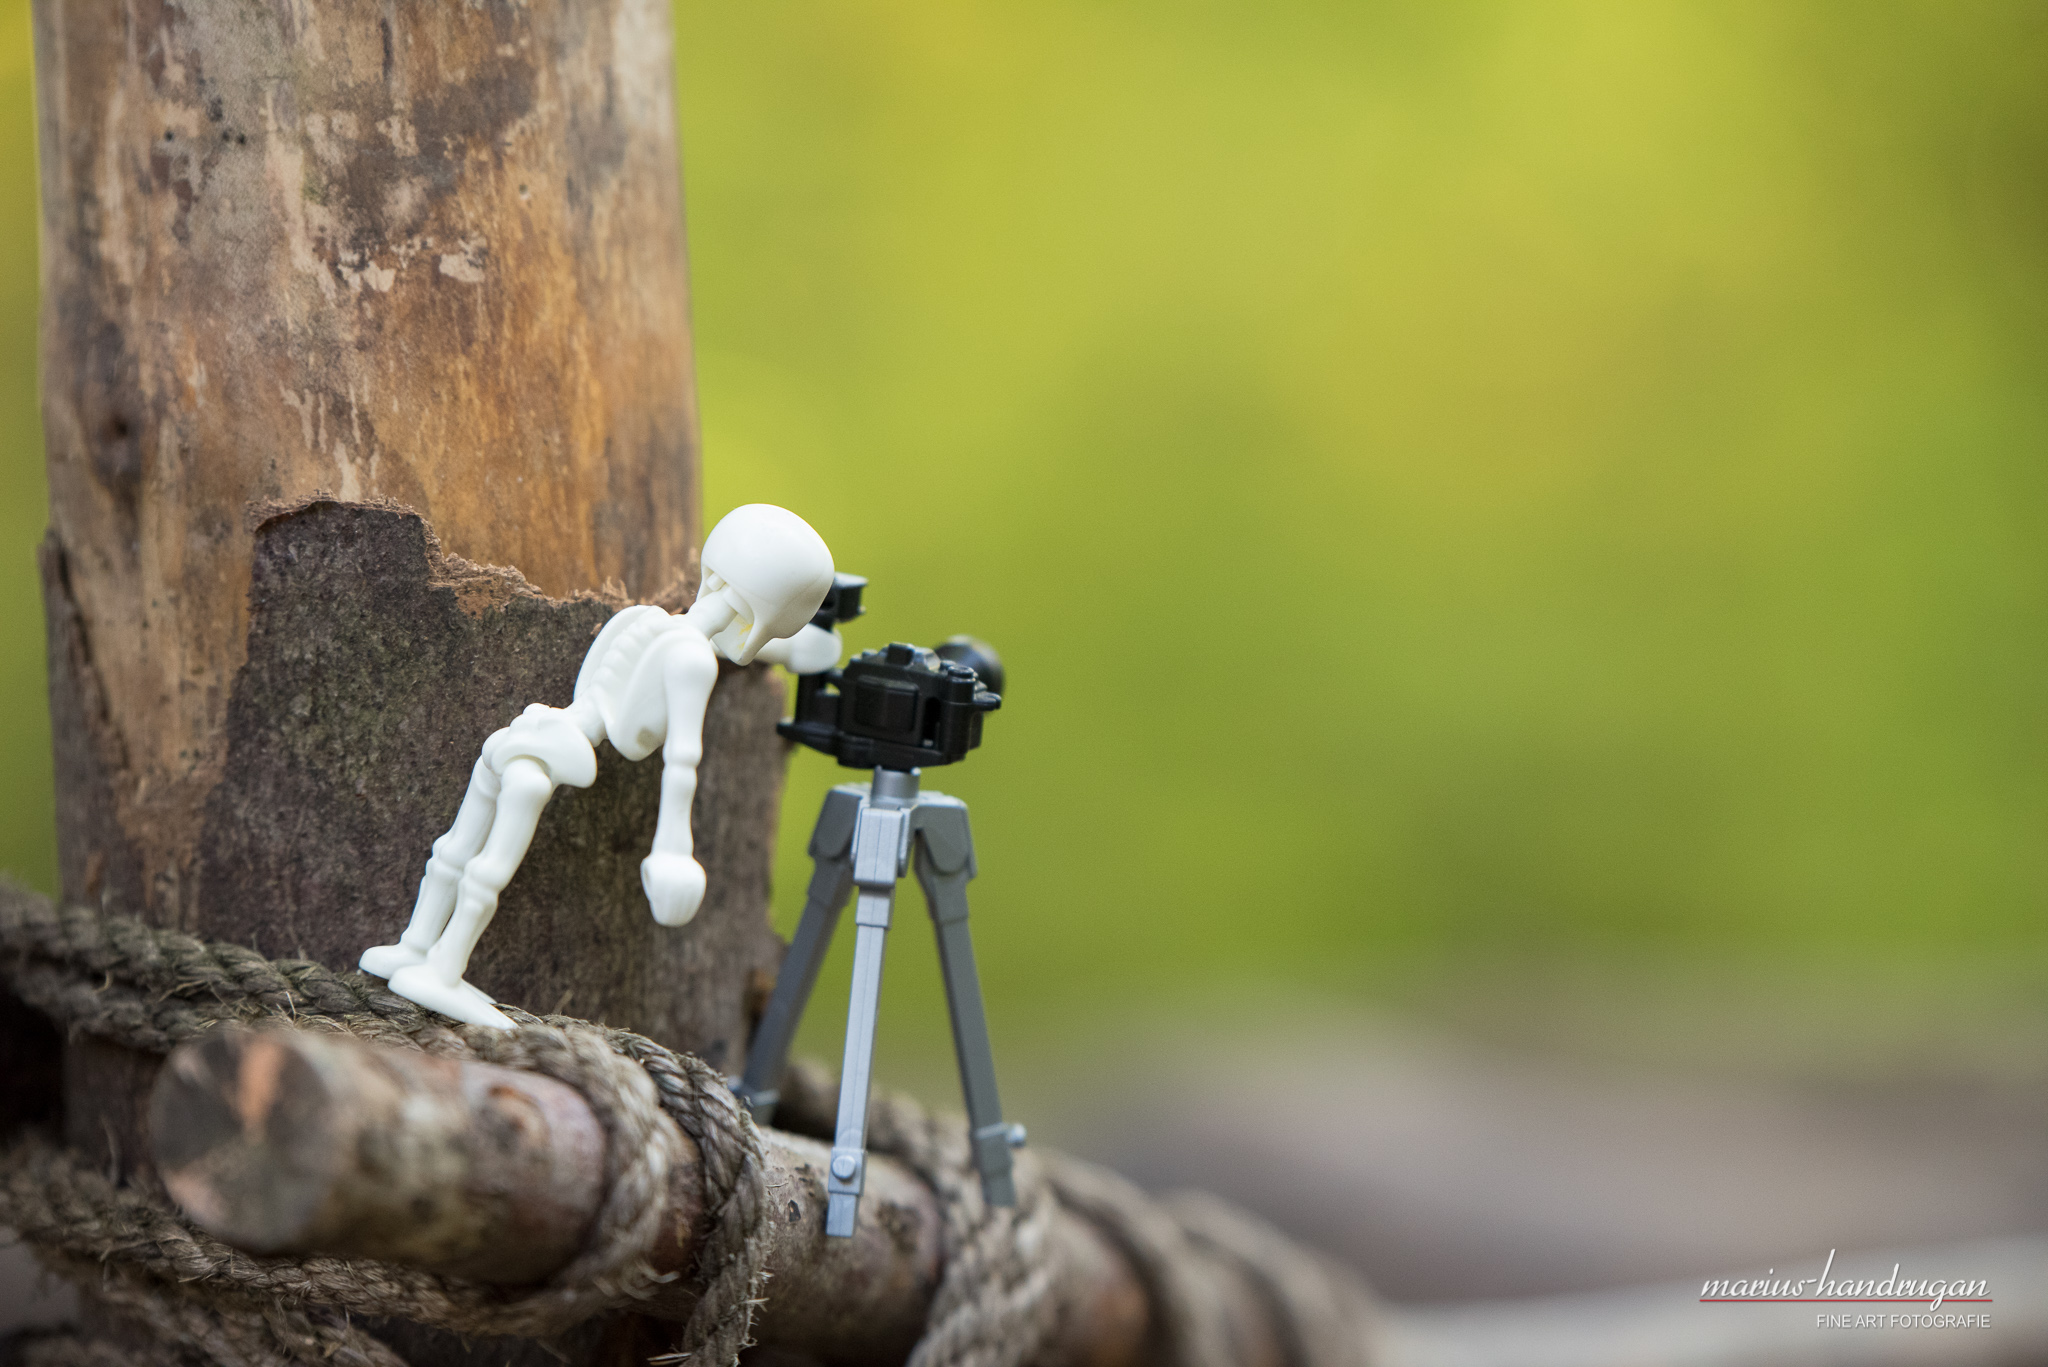 Playmobil Skelettfigur mit Kamera vor unscharfem Hintergrund